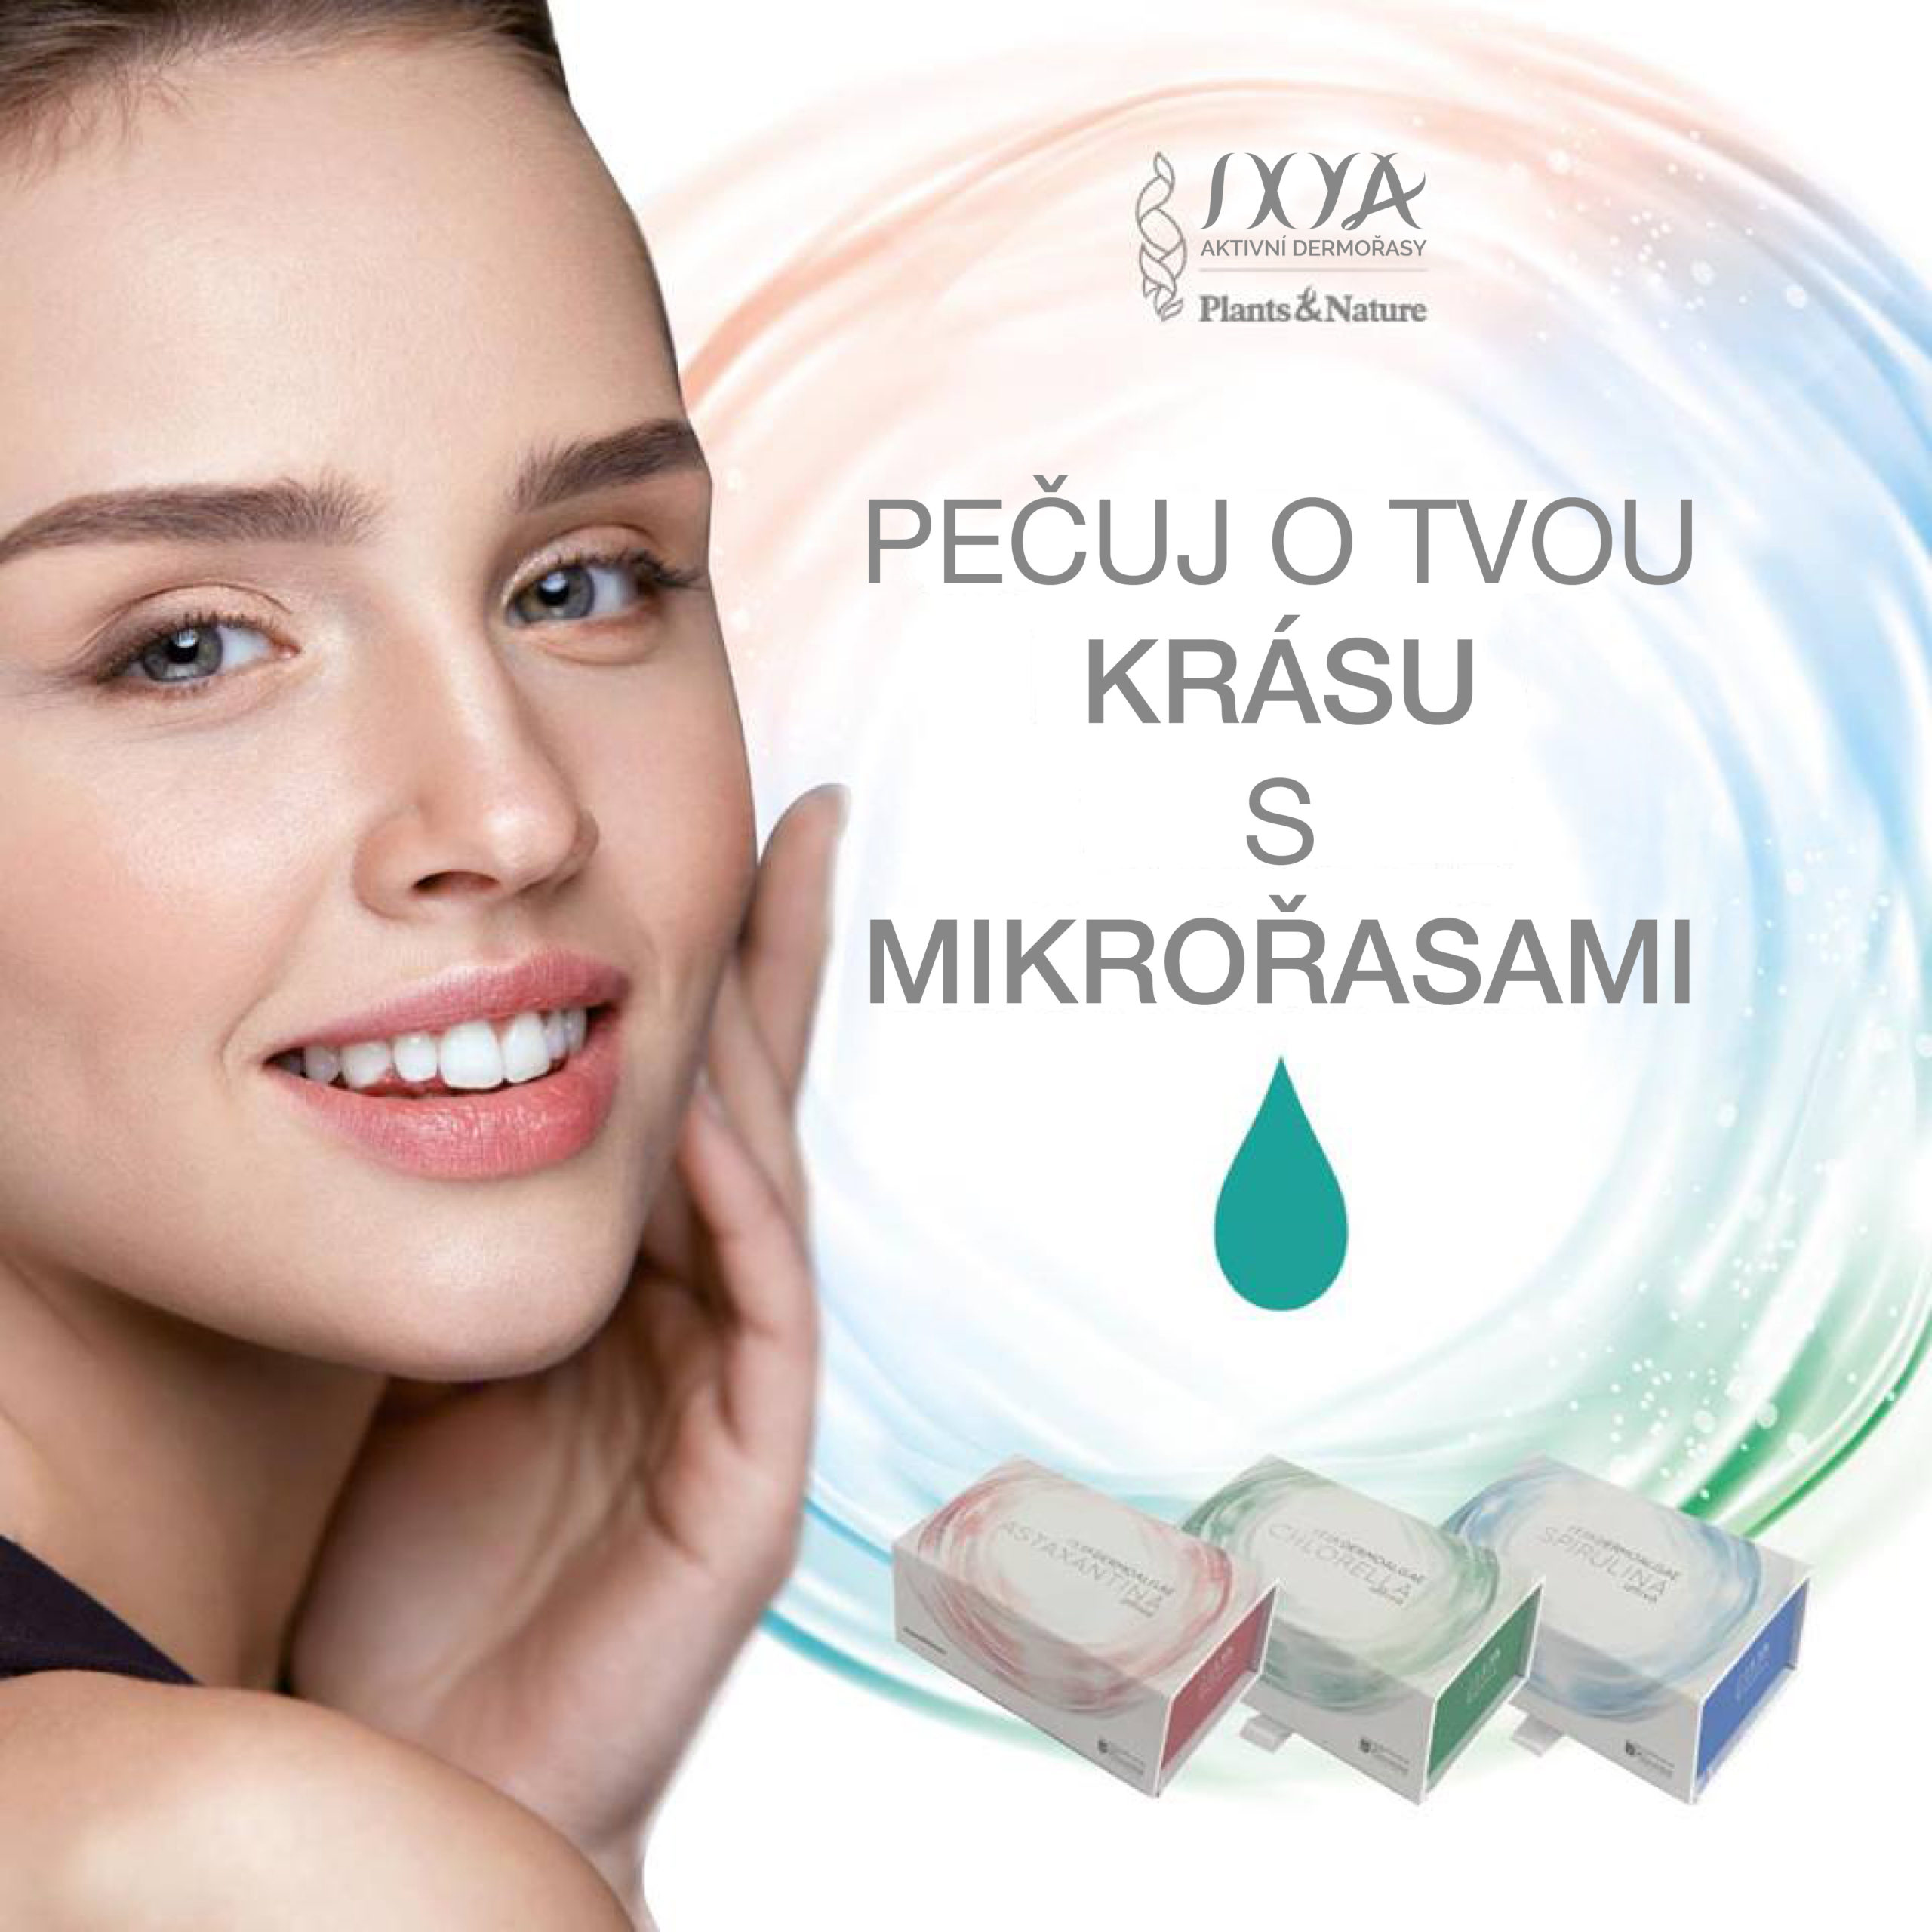 Kosmetika IXYA – síla dermořas a termální vody